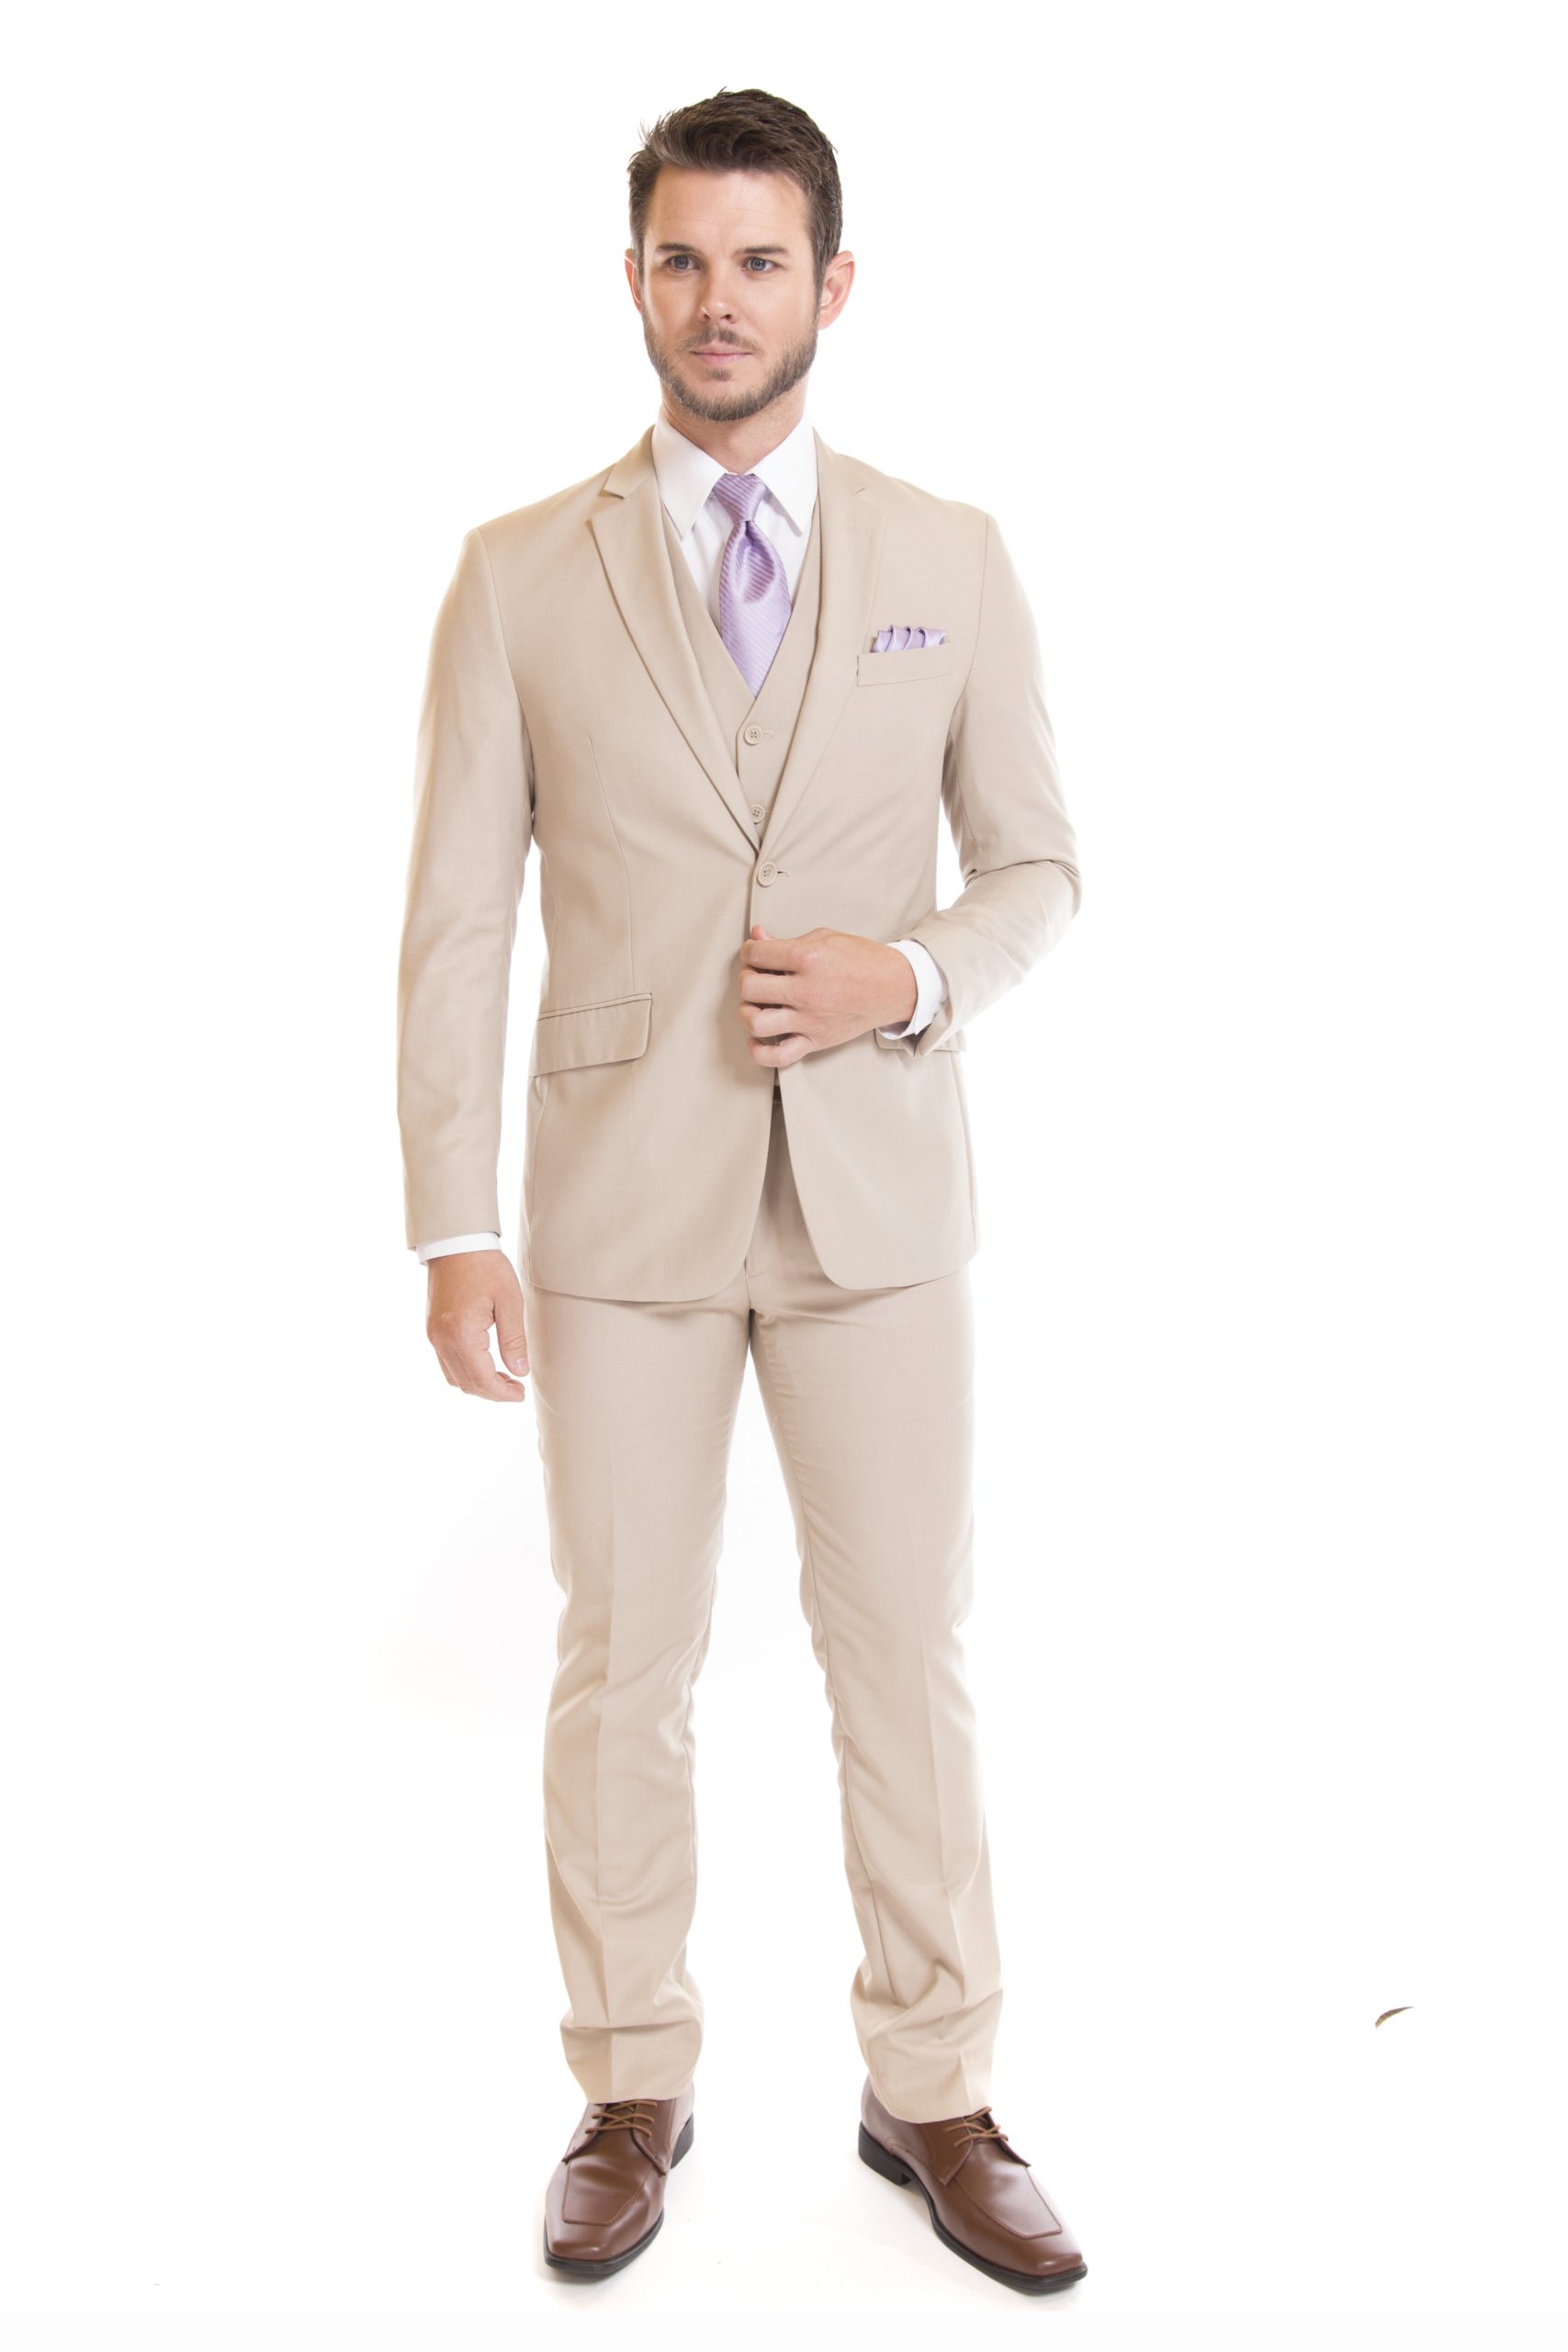 David Major Tan Slim Fit Suit